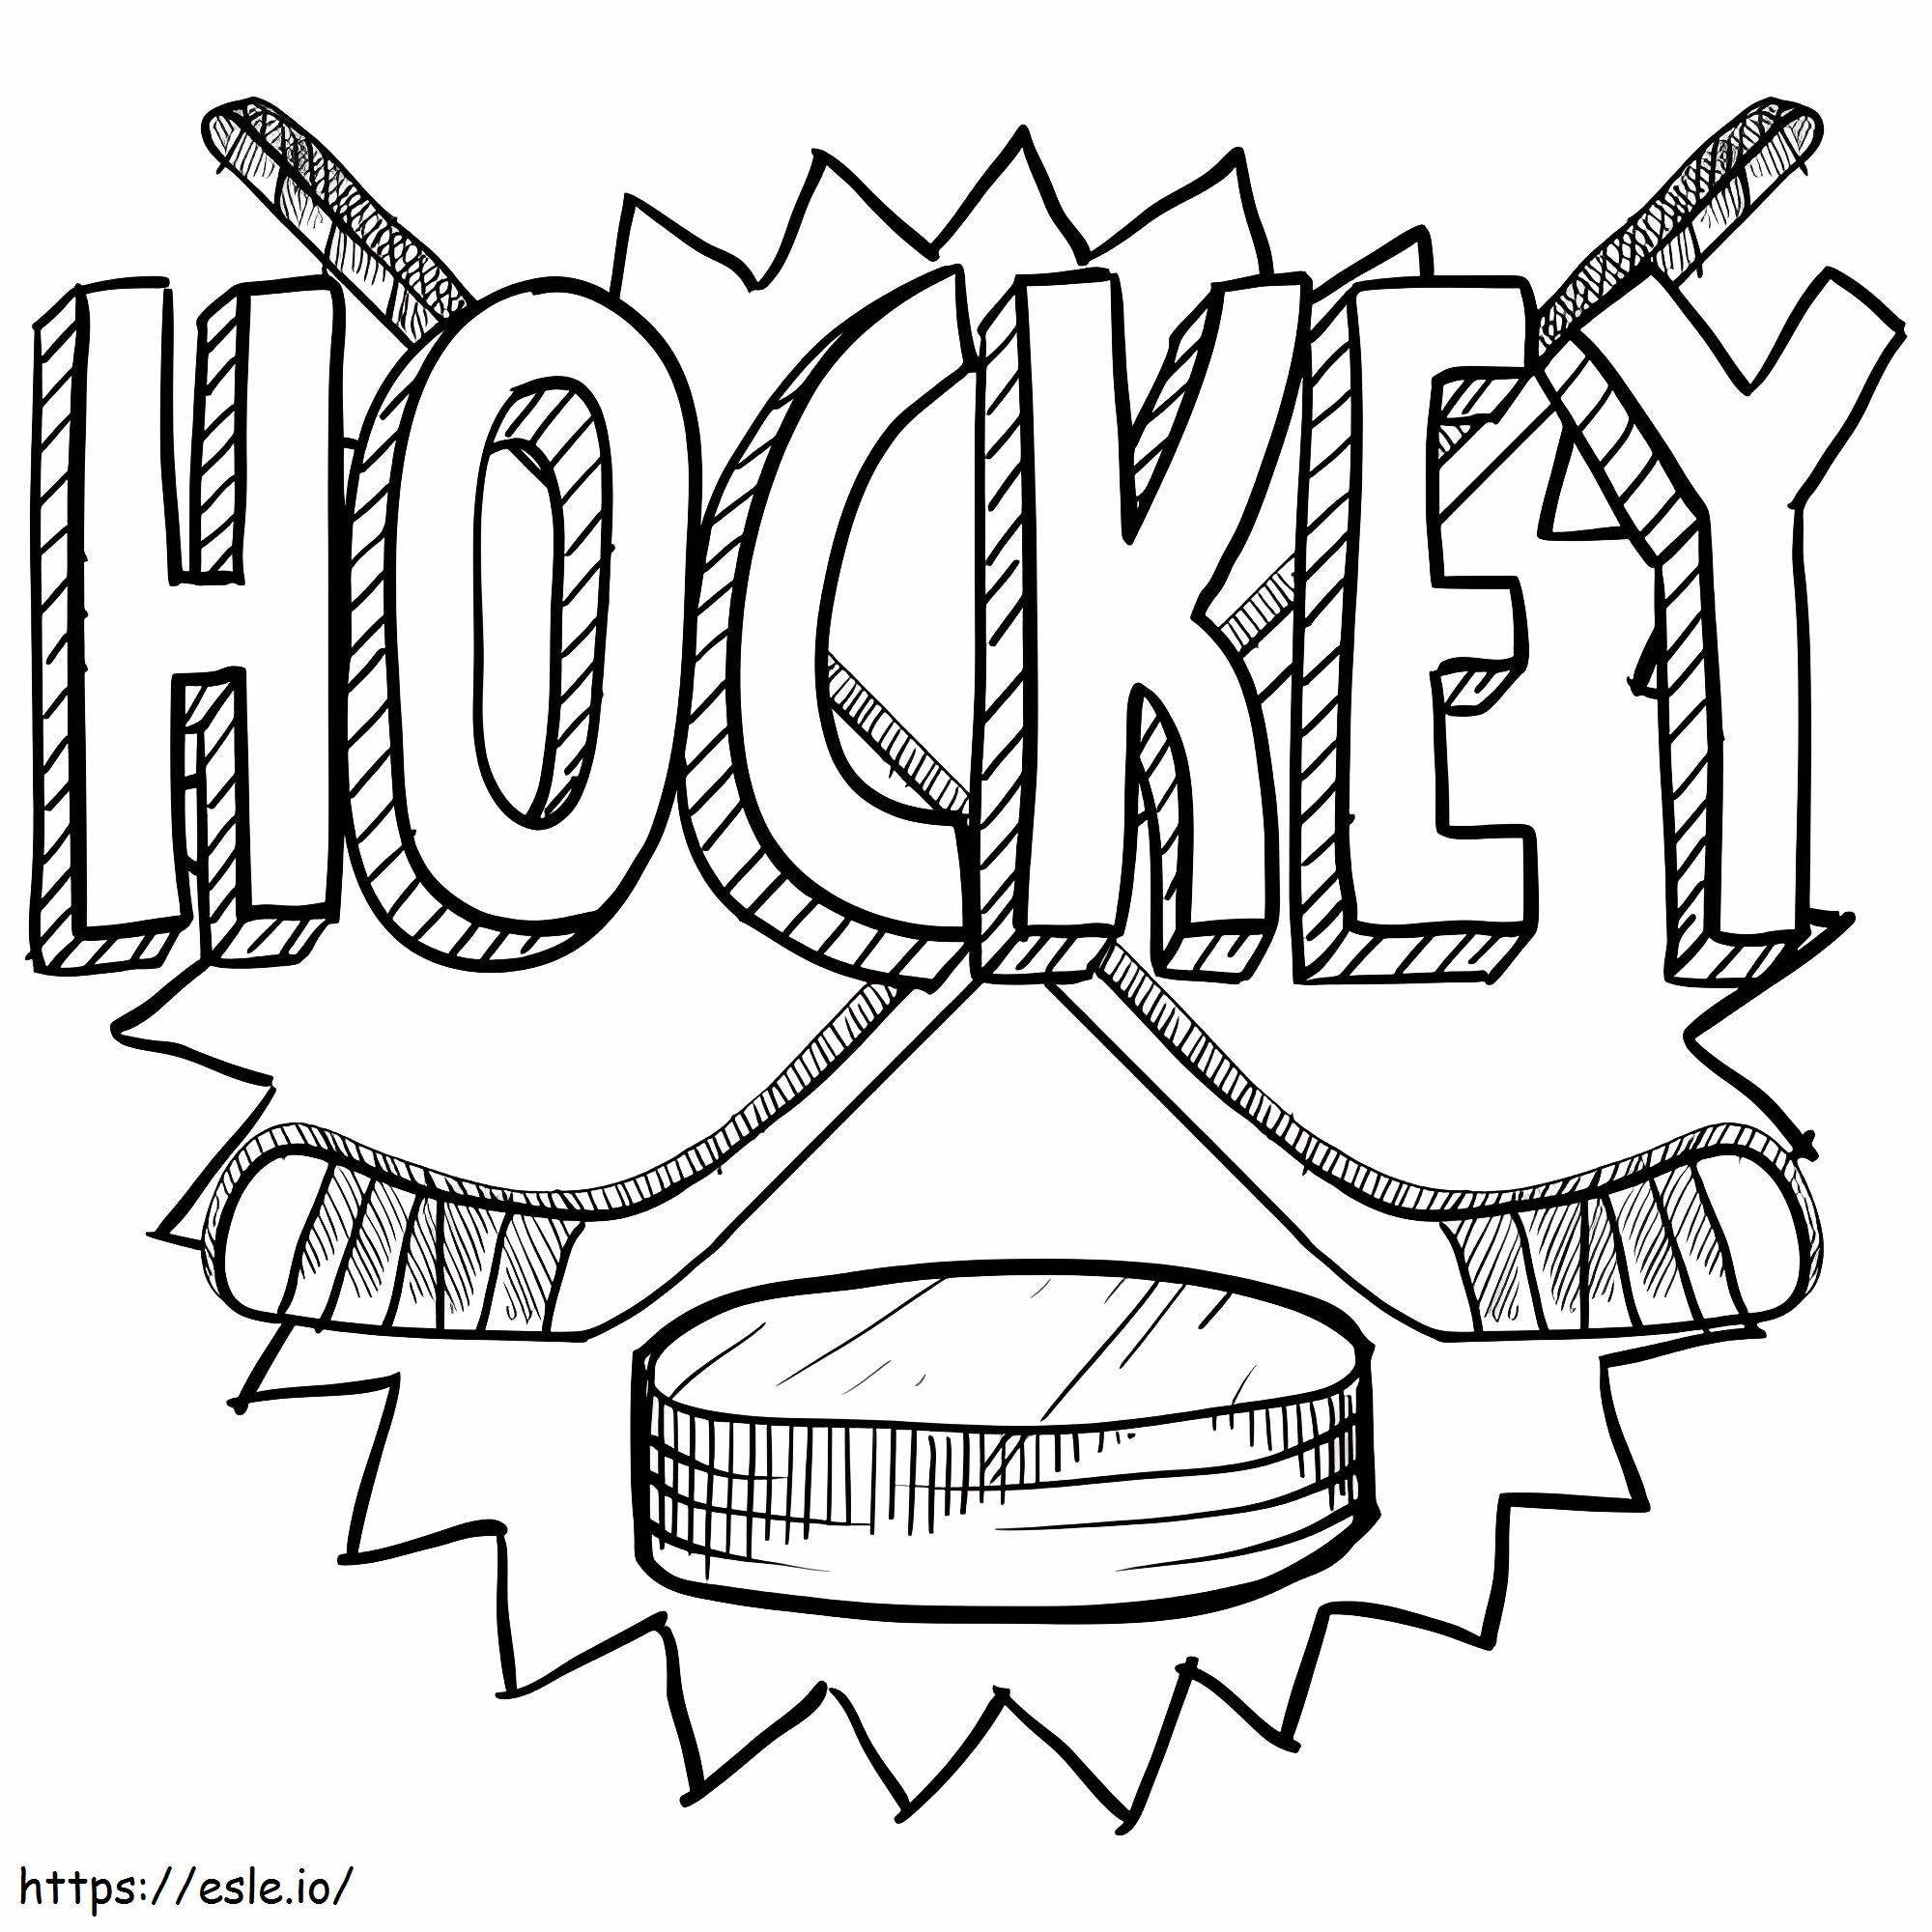 Hockey-logo kleurplaat kleurplaat